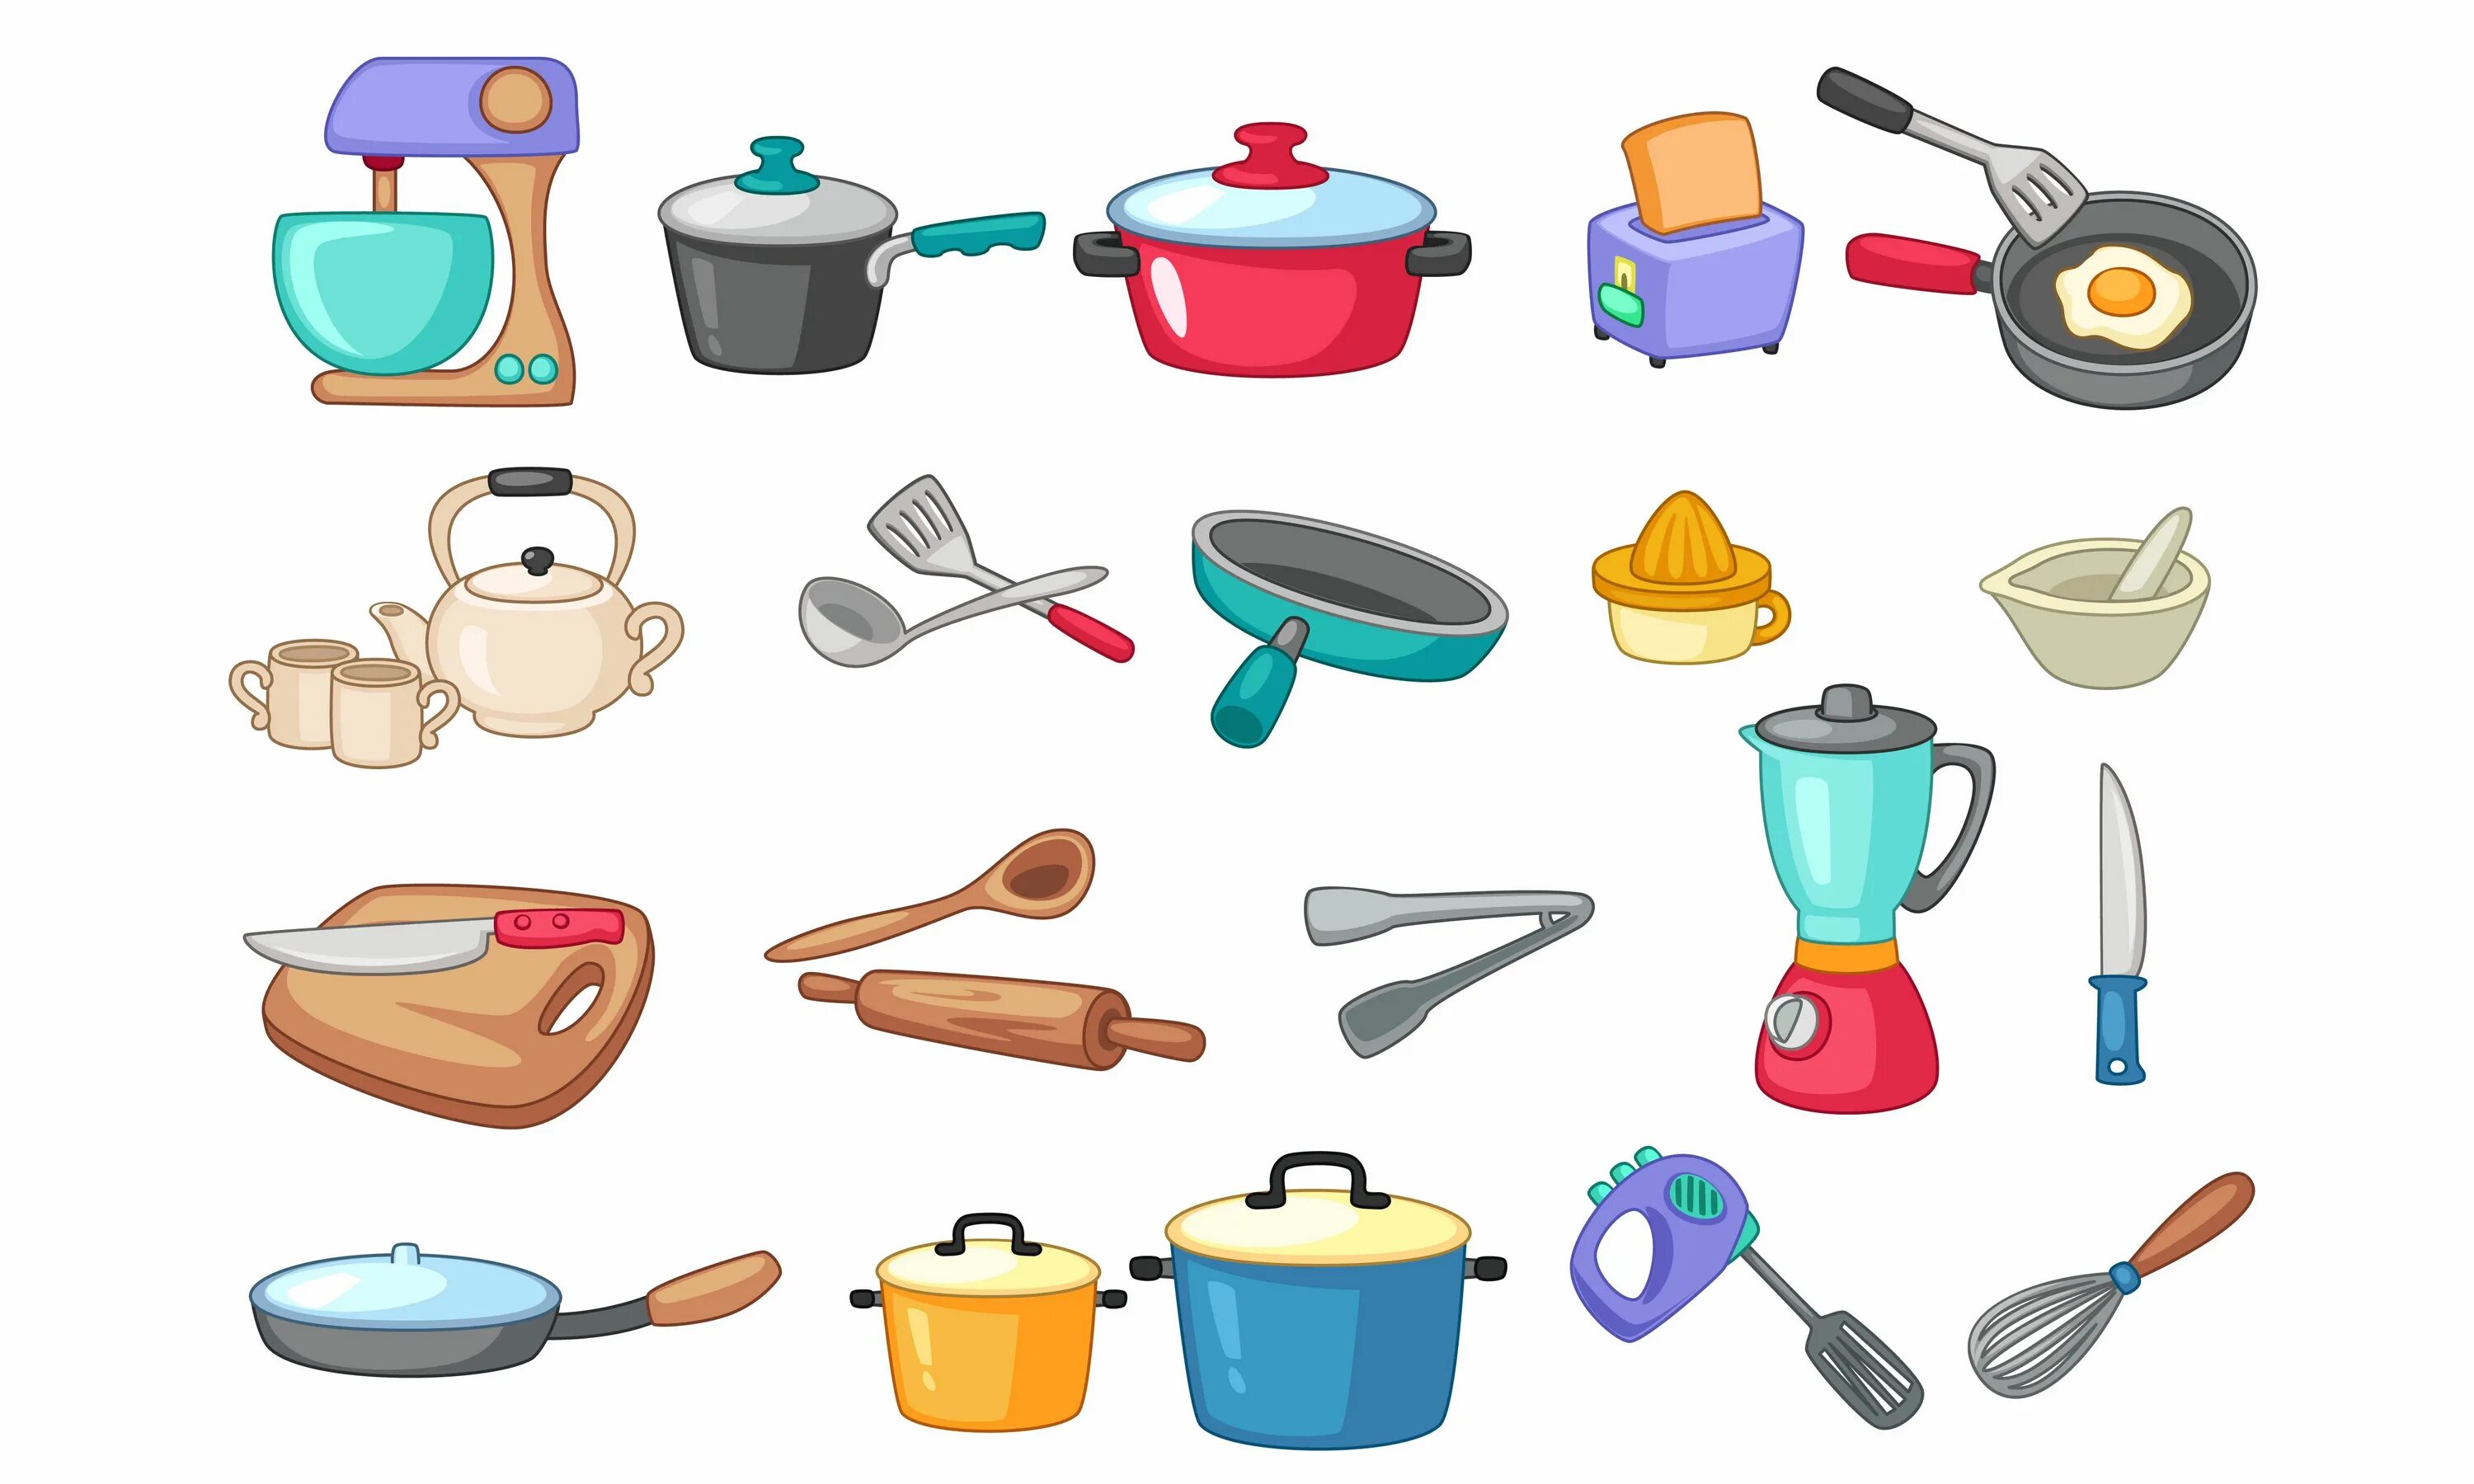 Посуда на букву а. Кухонная утварь. Предметы для кухни. Посуда и кухонные принадлежности для детей. Кухонное посуда для дитей.